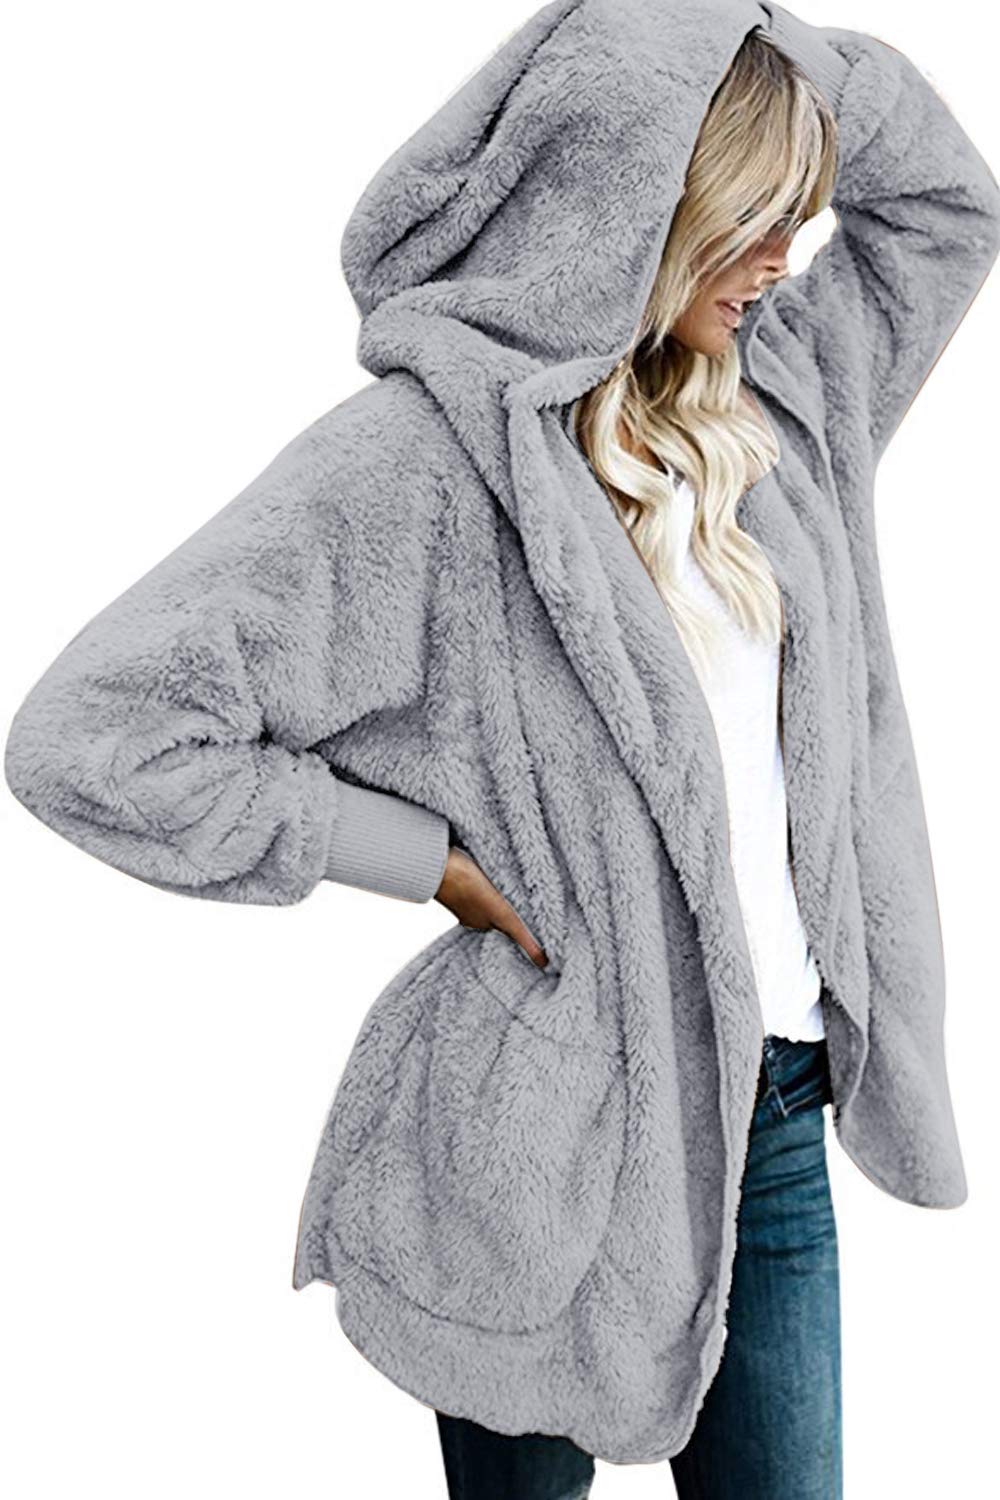 OMZIN Women/’s Winter Fluffy Fuzzy Open Front Cardigan Jacket Coat Outwear with Pockets